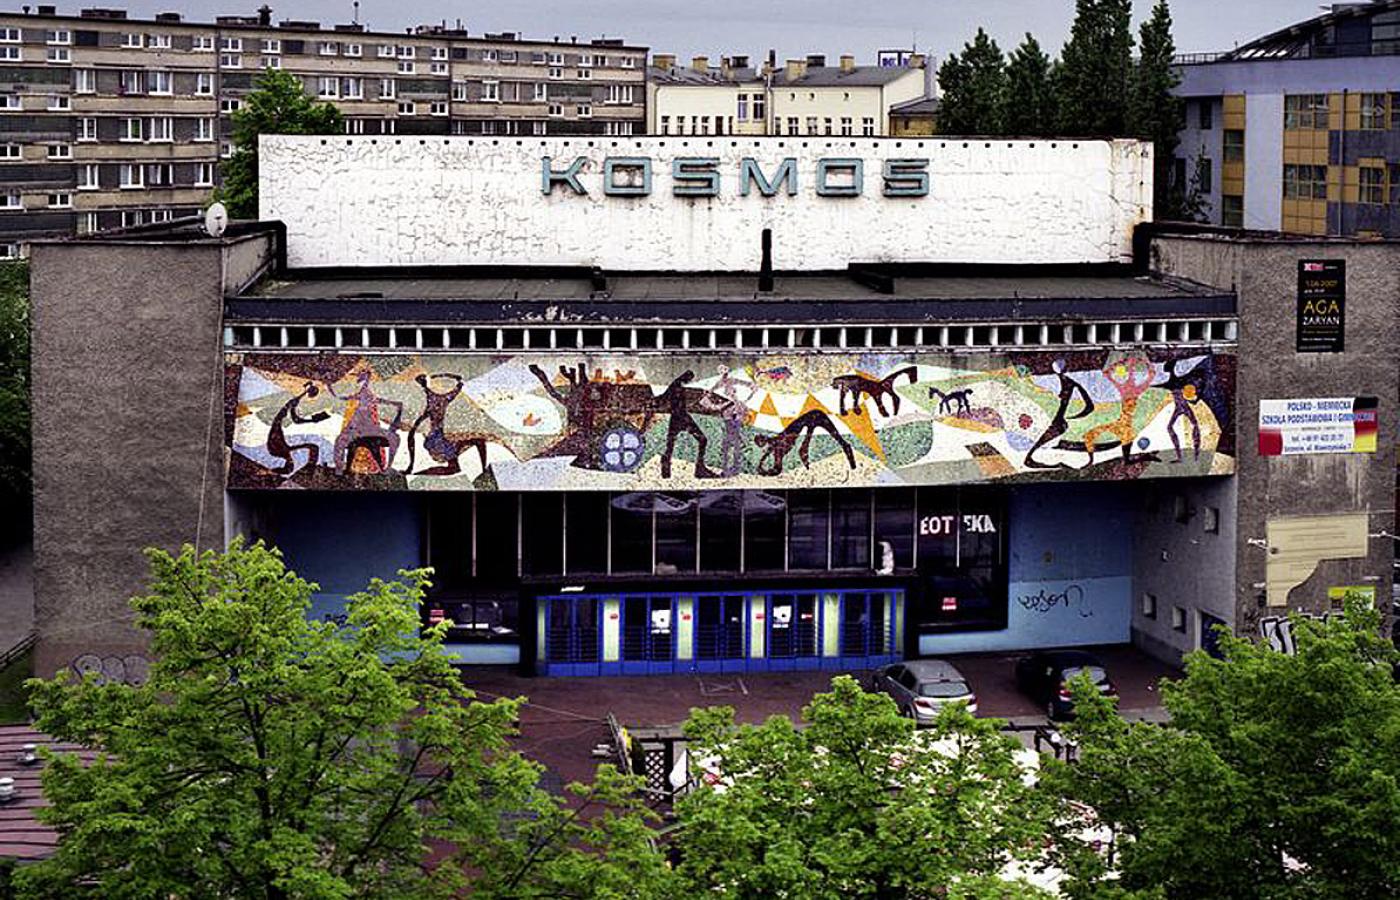 Jedno z najciekawszych architektonicznie polskich kin Kosmos. Krytycy architektury chwalą szczecińskie kino za funkcjonalność rozwiązań i unikatową w skali kraju kunsztowną mozaikę na froncie budynku.